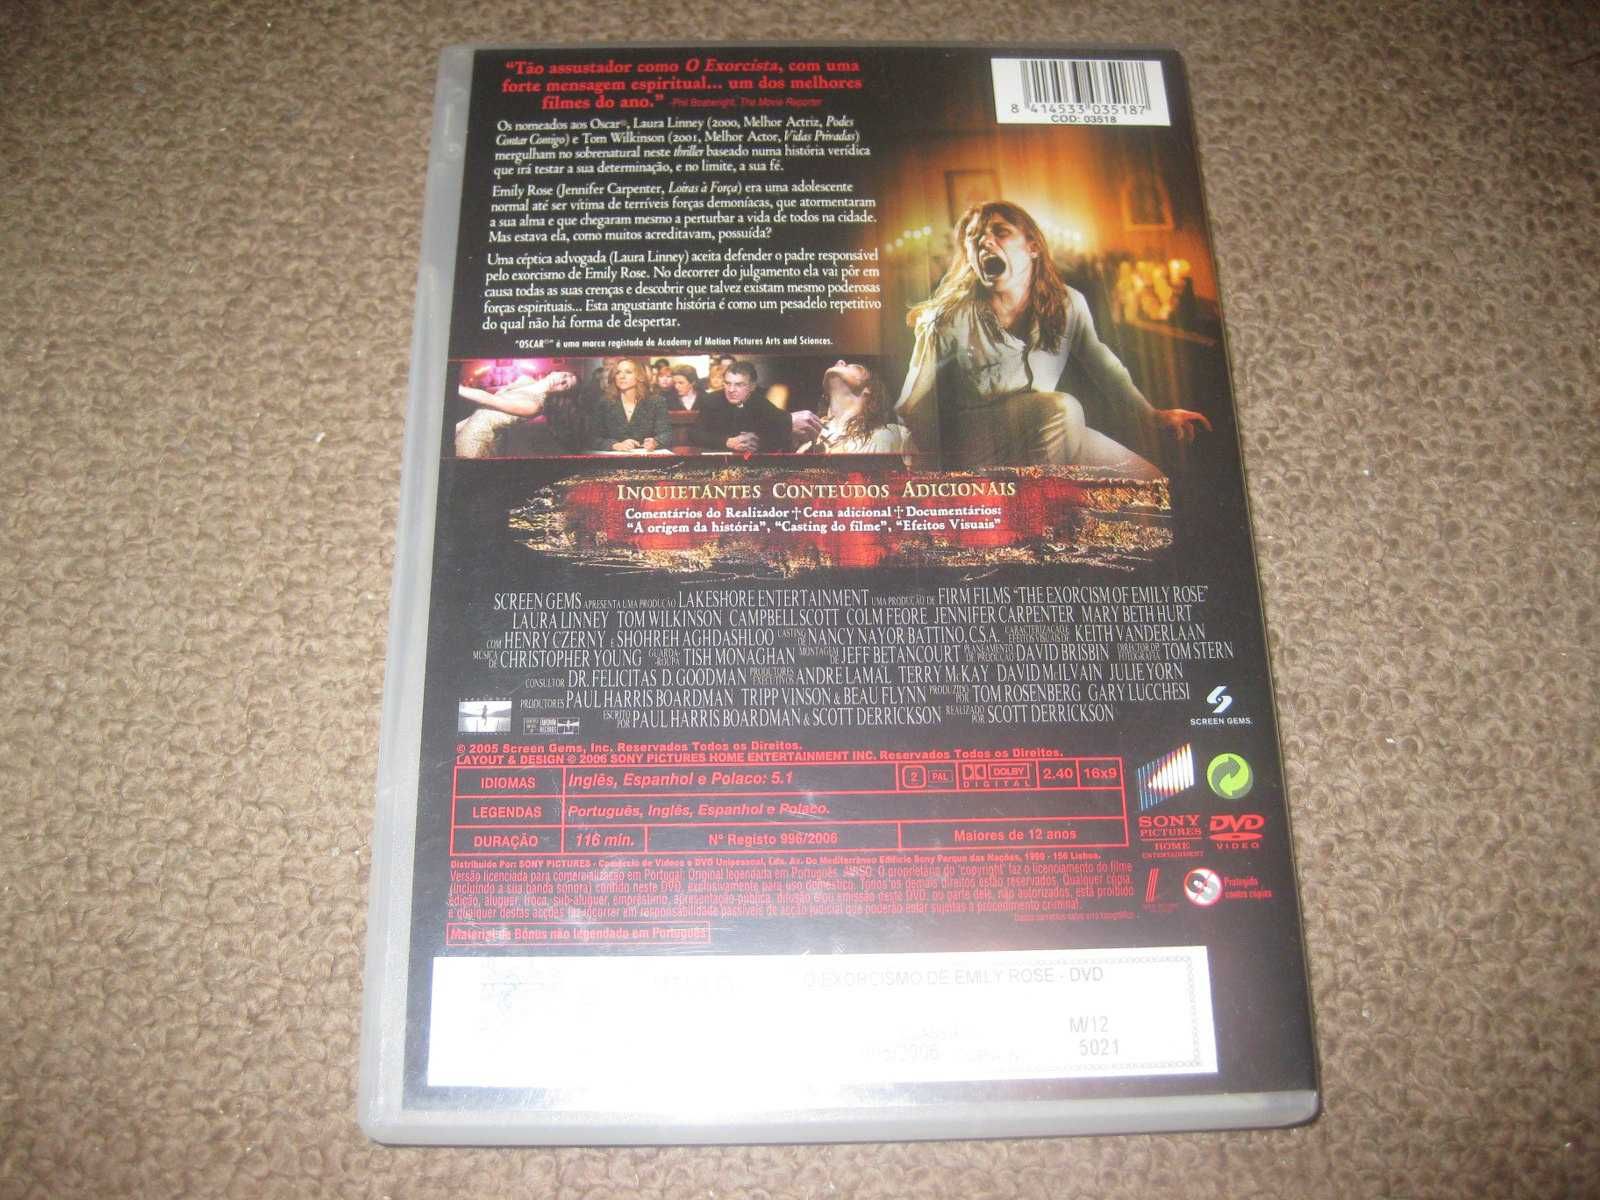 DVD - POSSUÍDA (FILME - DUBLADO OU LEGENDADO)